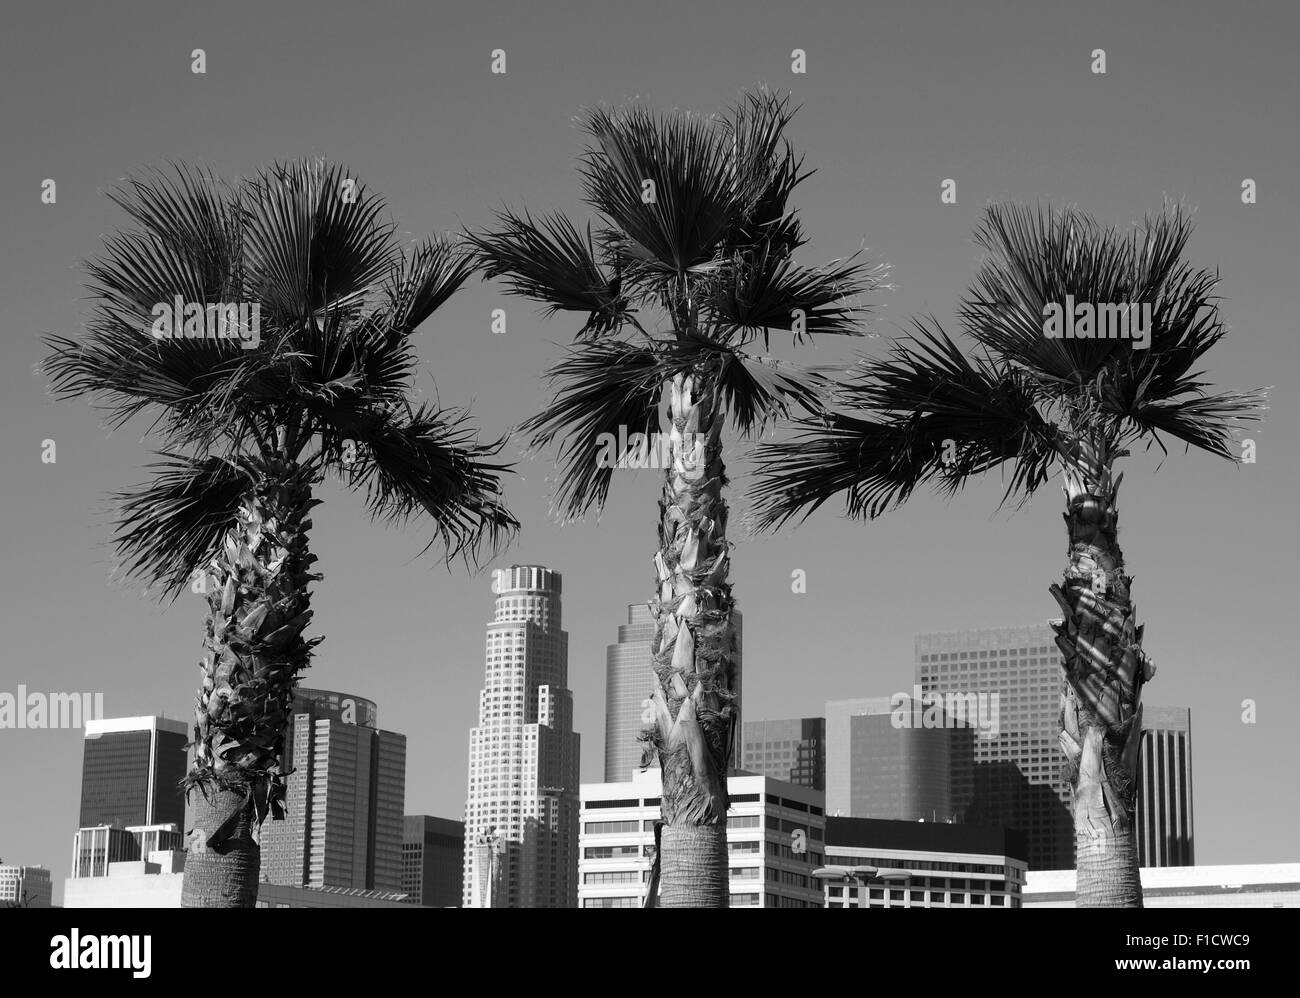 Palmeras y altos rascacielos del centro de Los Ángeles, California, en blanco y negro. Foto de stock